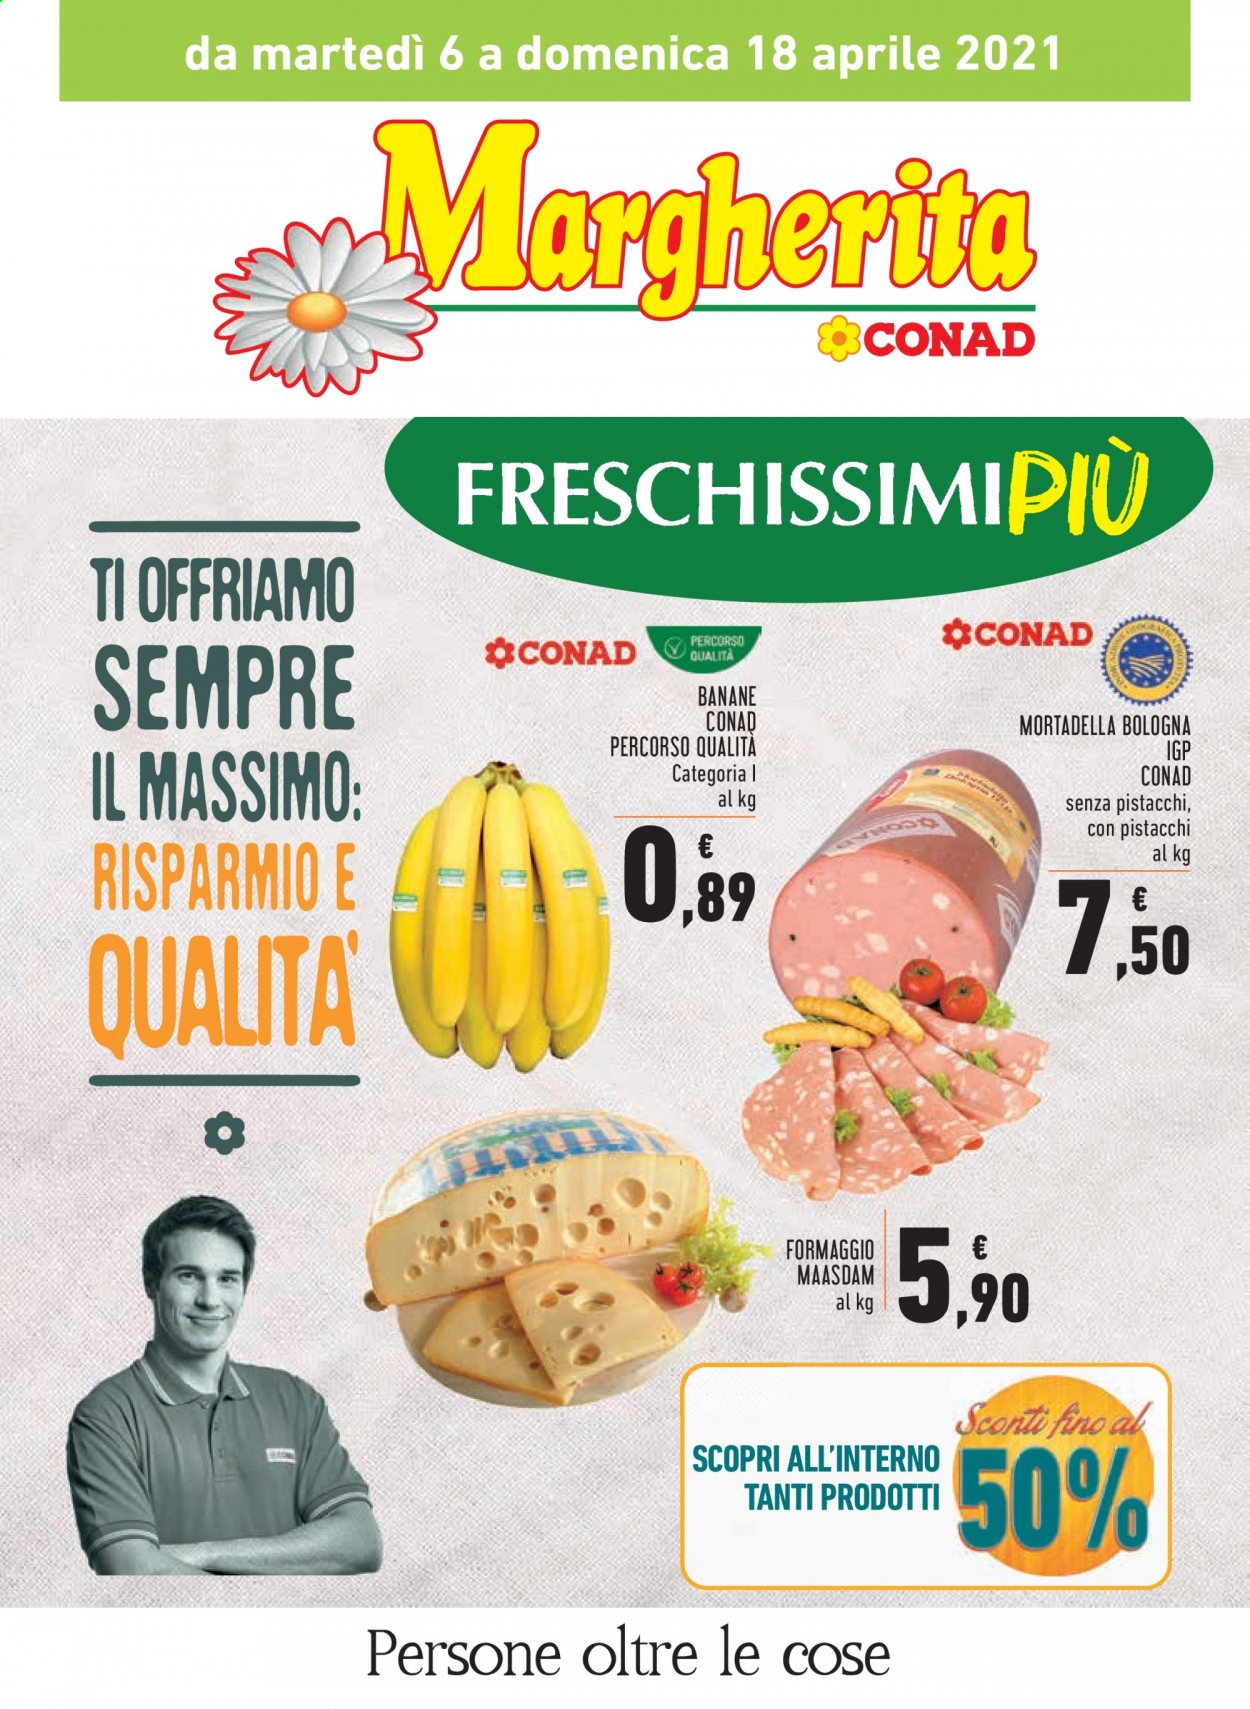 thumbnail - Volantino Conad - 6/4/2021 - 18/4/2021 - Prodotti in offerta - banane, mortadella, formaggio, maasdam. Pagina 1.